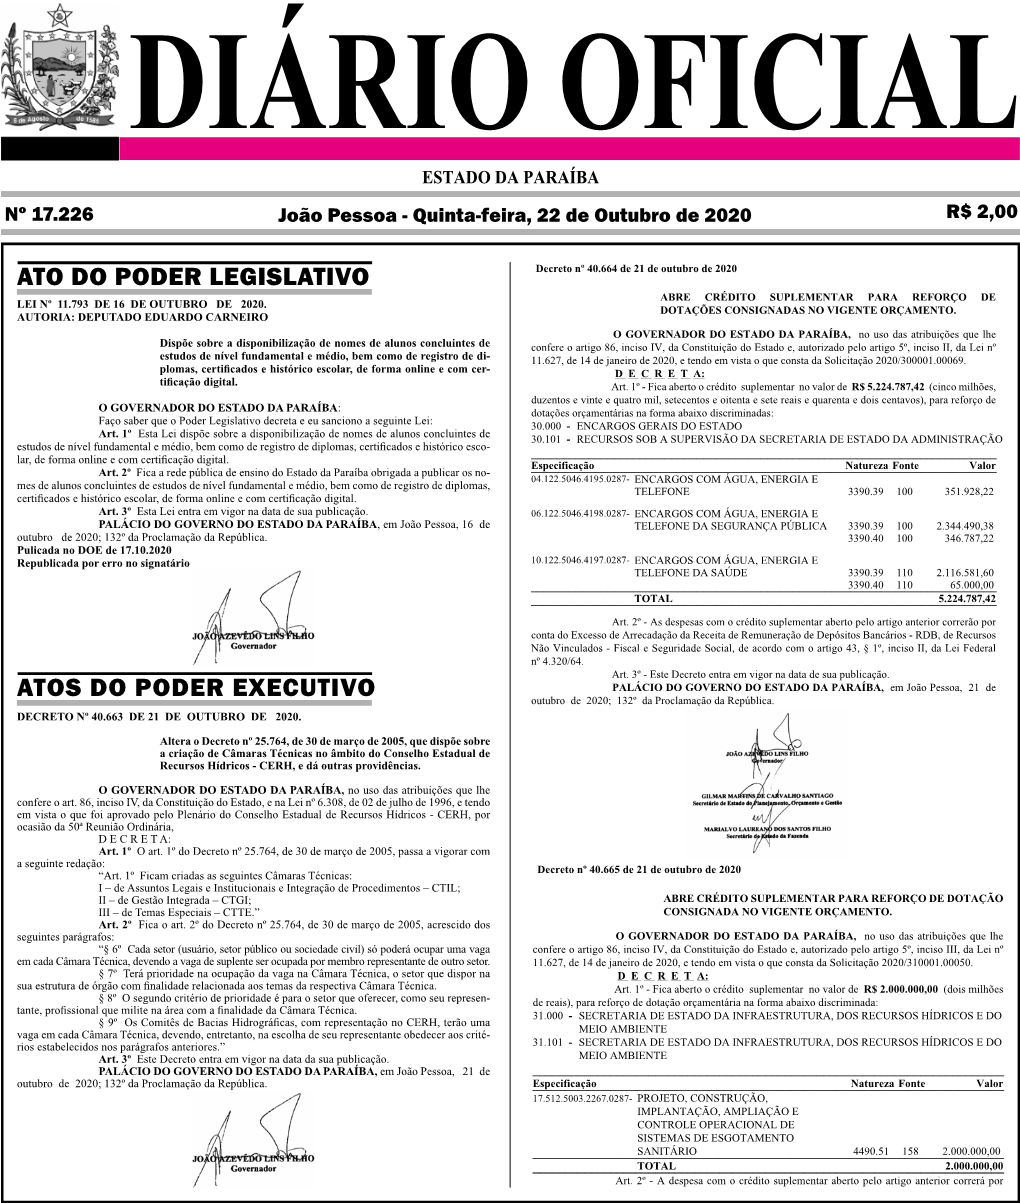 Diario Oficial 22-10-2020.Pdf